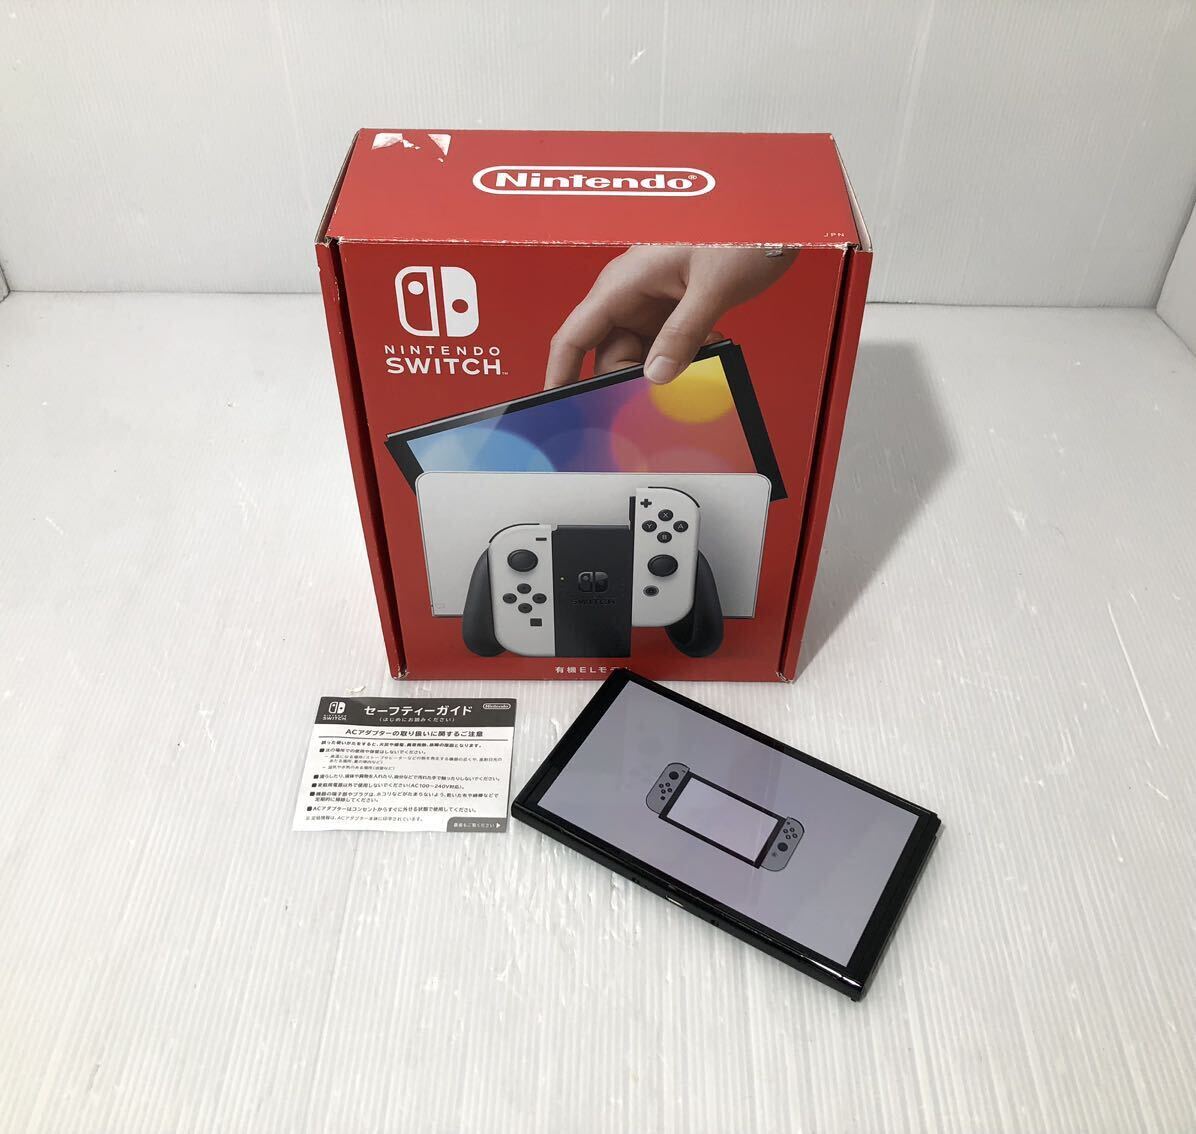  nintendo Nintendo Switch корпус HEG-001 иметь машина EL модель 2022 год новая модель с коробкой работа хороший Nintendo переключатель 64GB